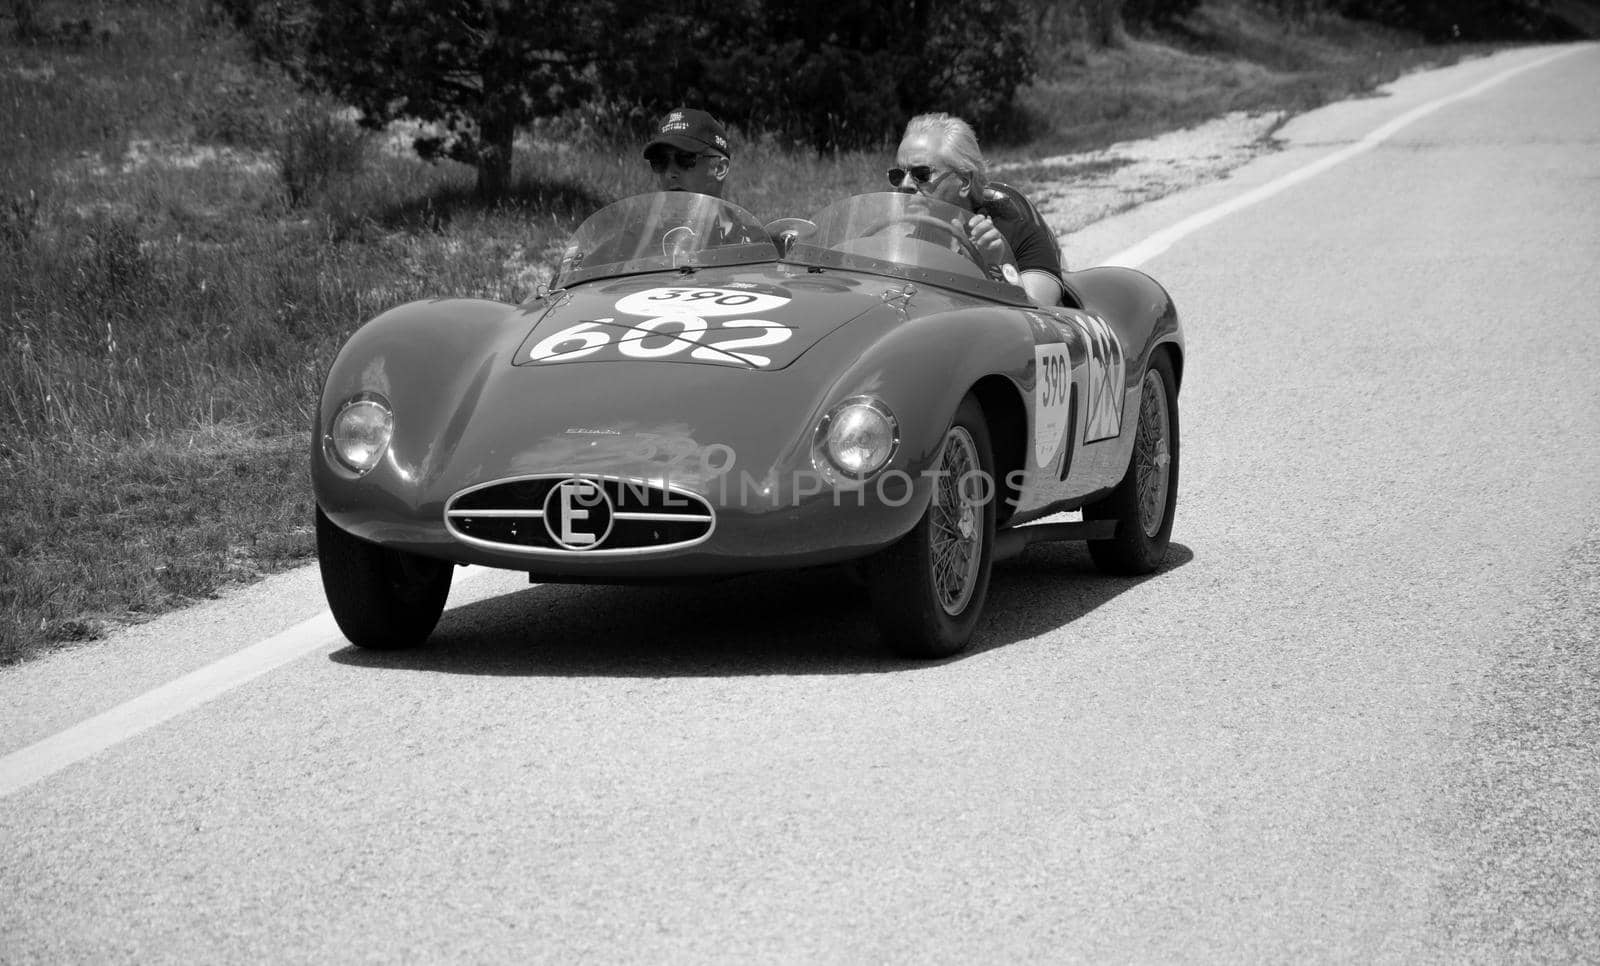 URBINO - ITALY - JUN 16 - 2022 : ERMINI 357 SPORT 1500 SCAGLIETTI 1955 on an old racing car in rally Mille Miglia 2022 the famous italian historical race (1927-1957